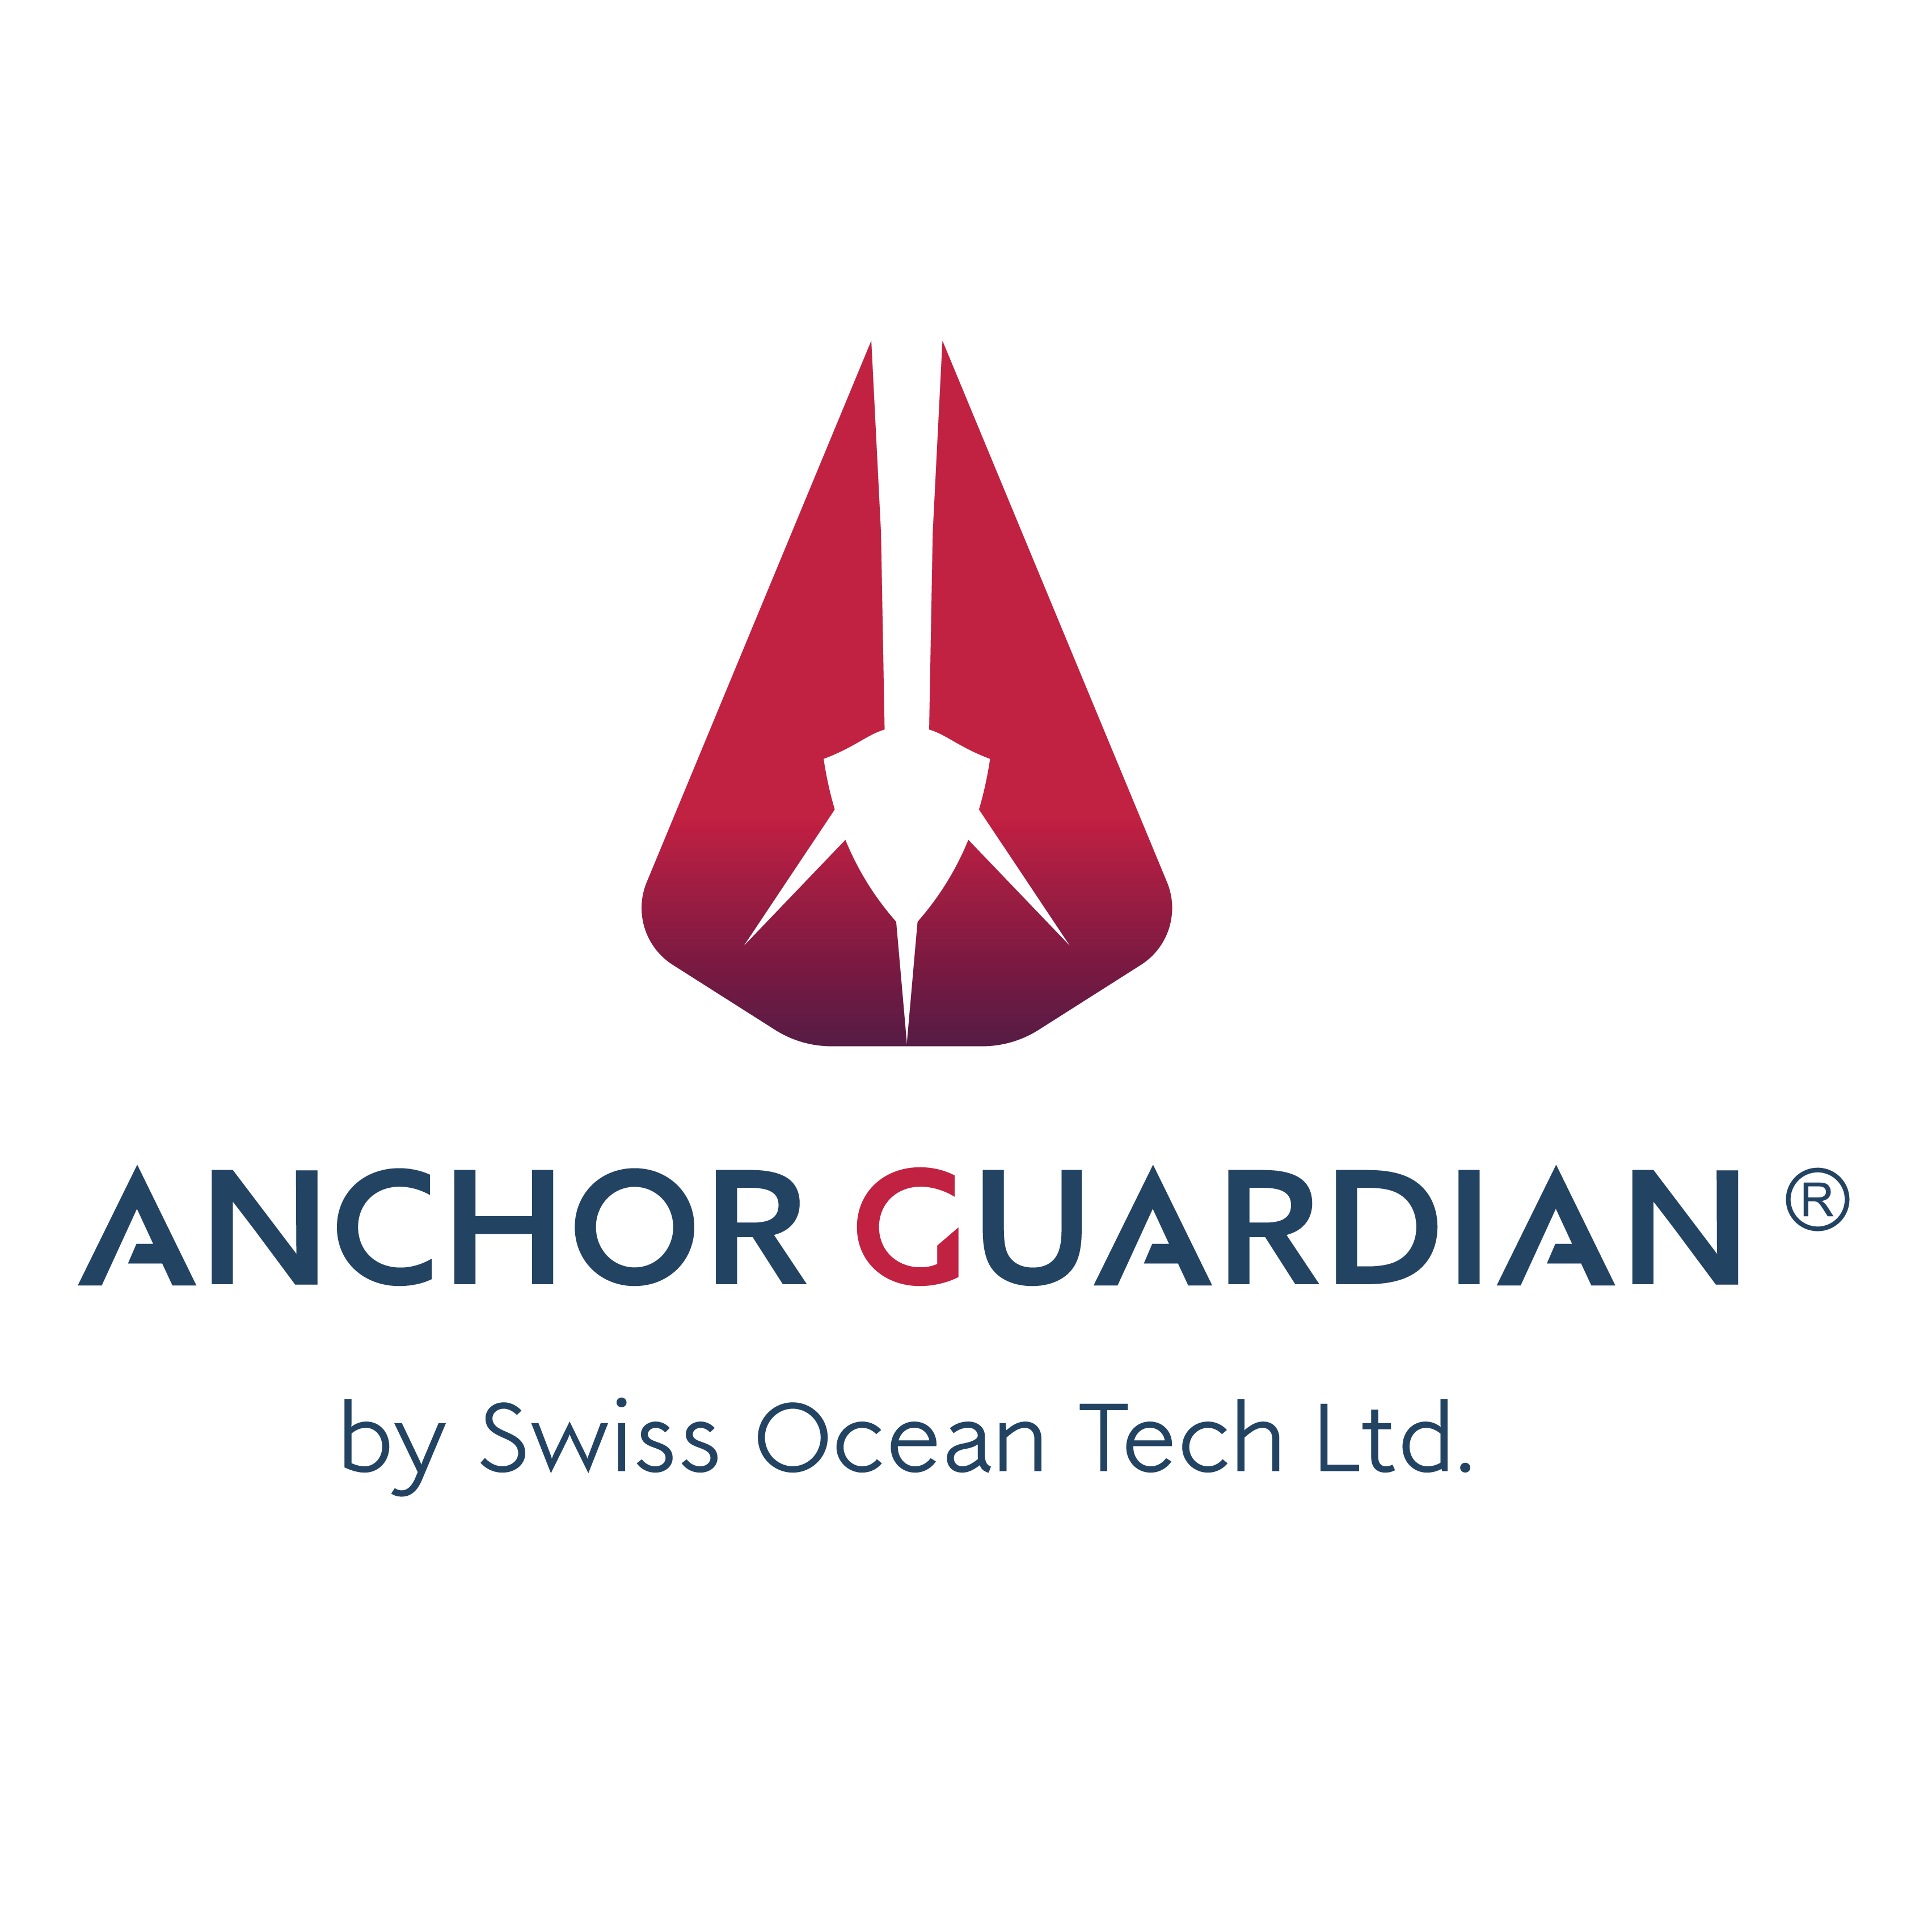 AnchorGuardian by Swiss Ocean Tech Ltd.